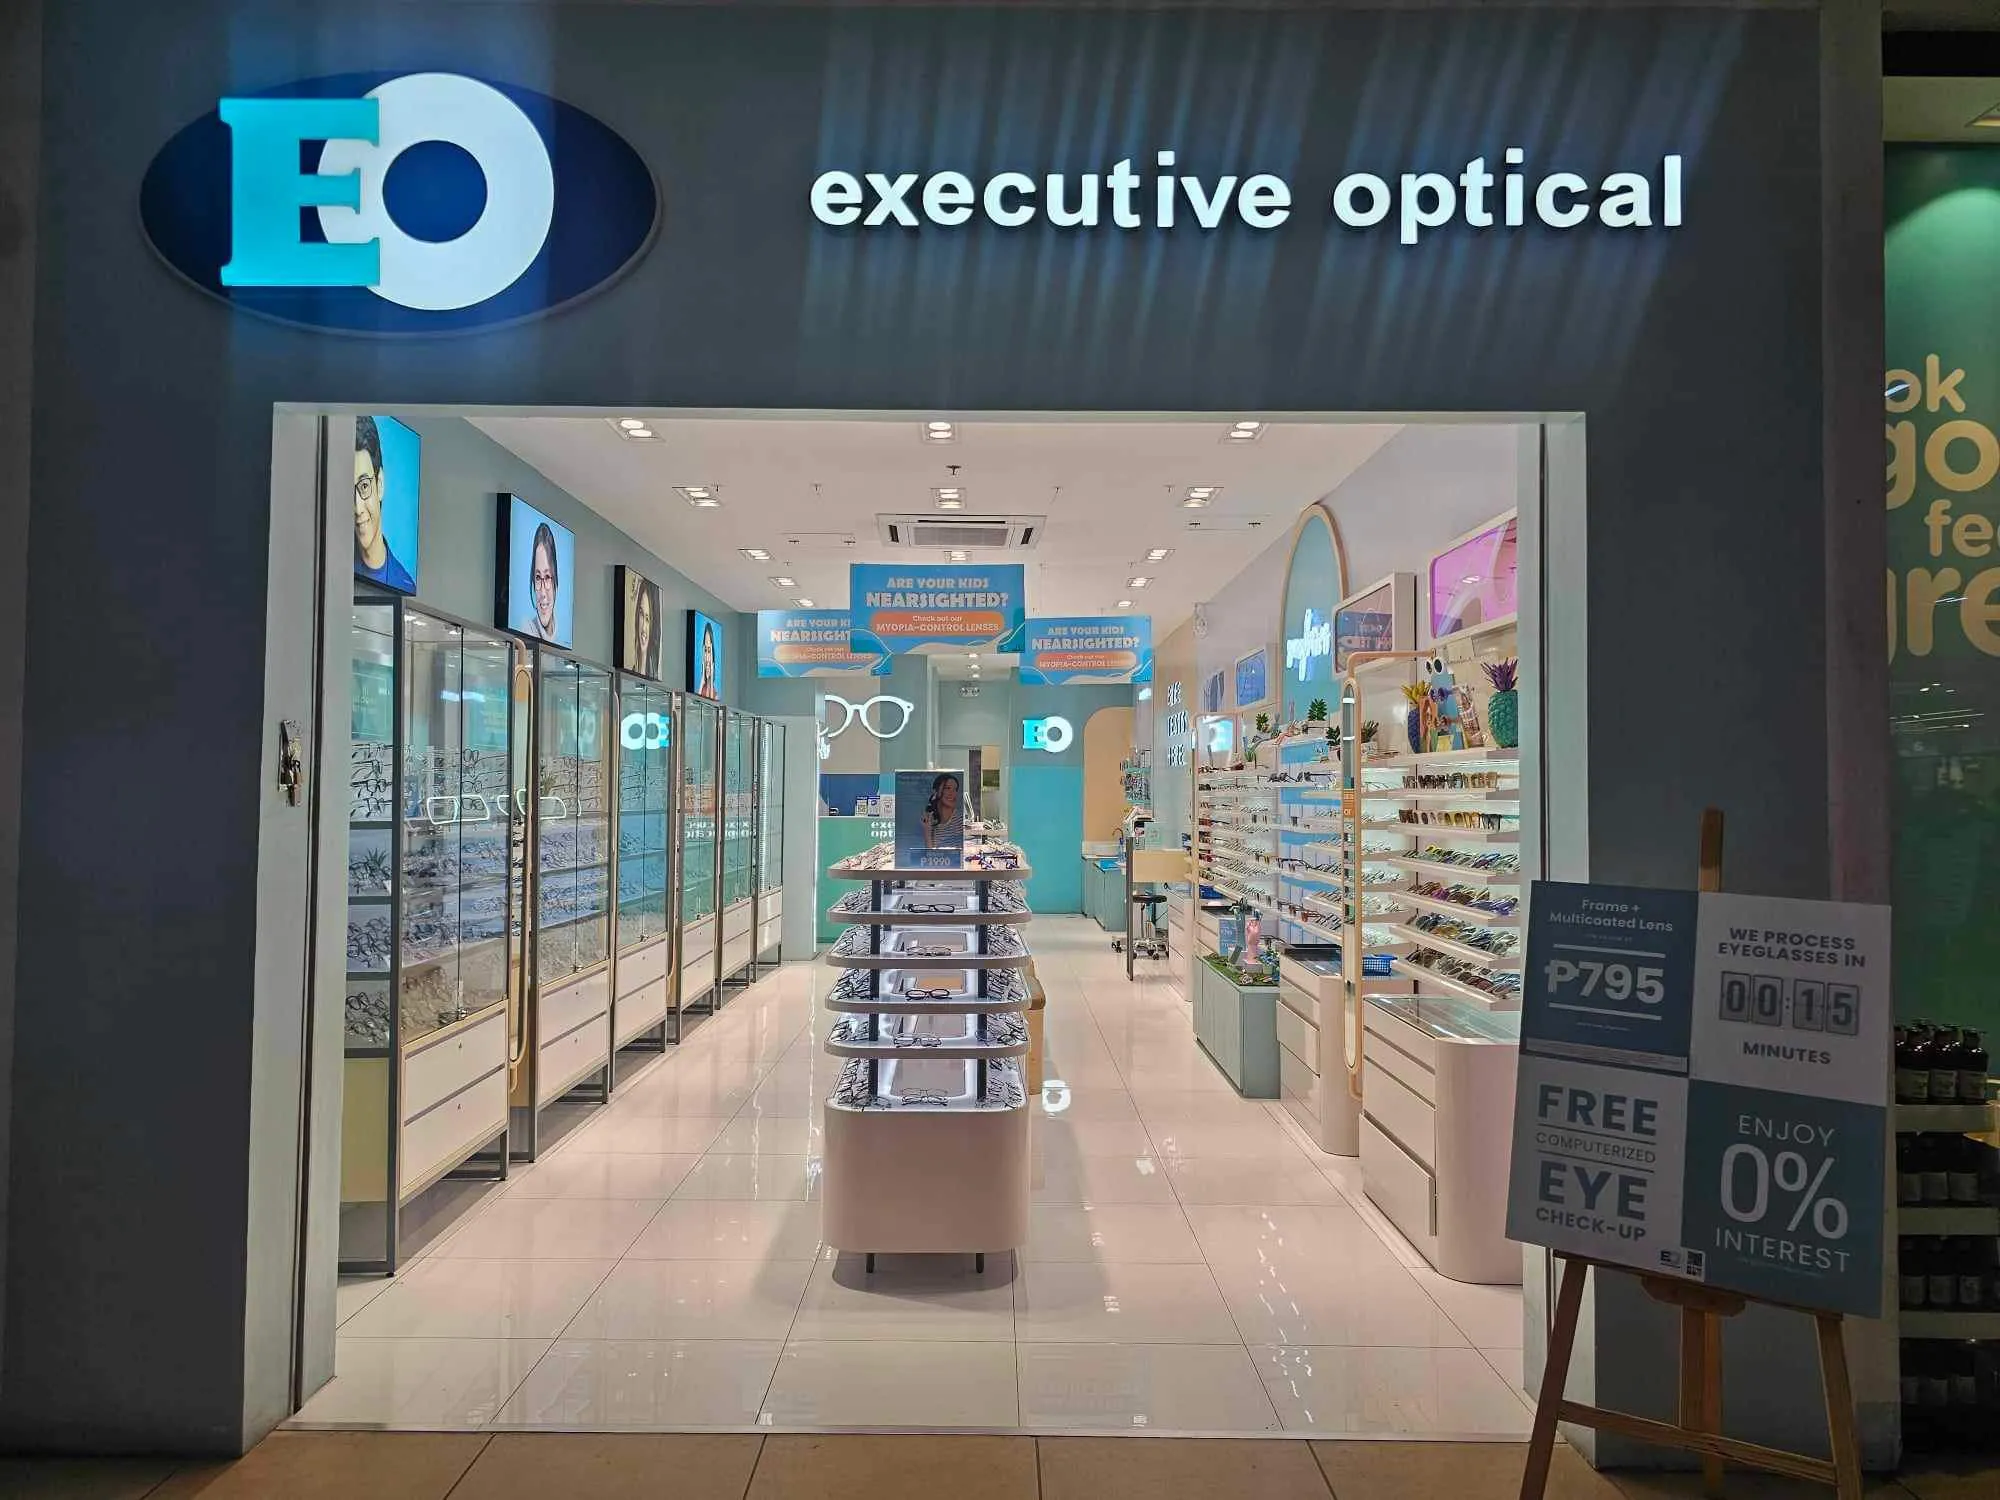 EO Waltermart Tanauan Branch - Sunglasses store